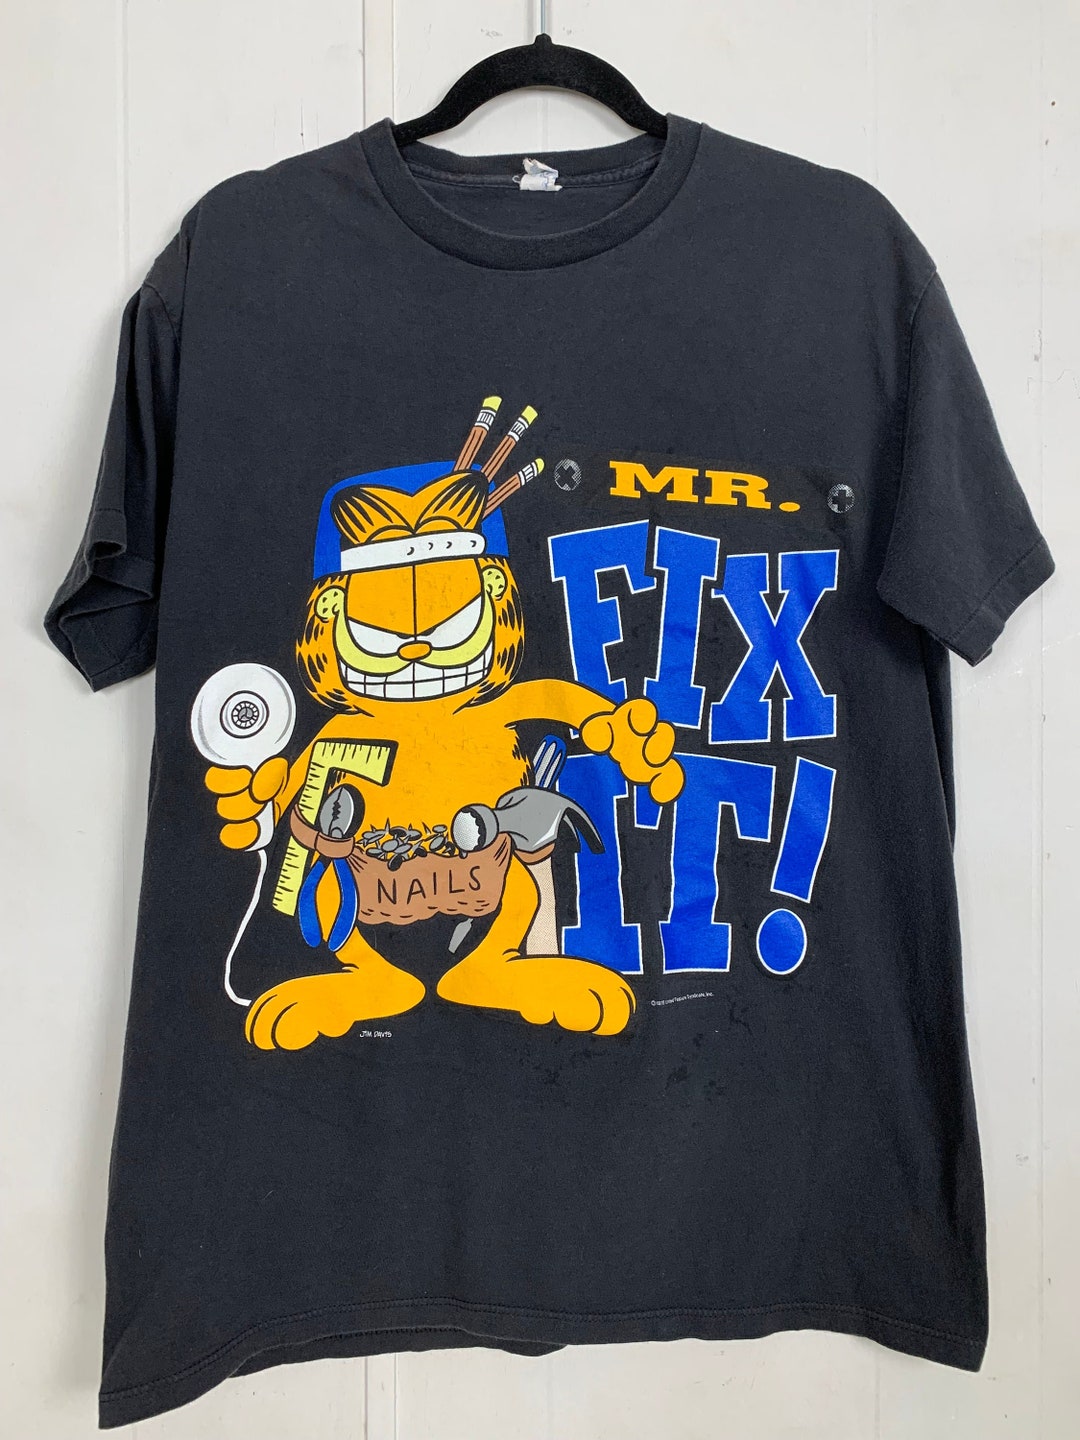 Garfield Mr. Fix It - Etsy T-shirt